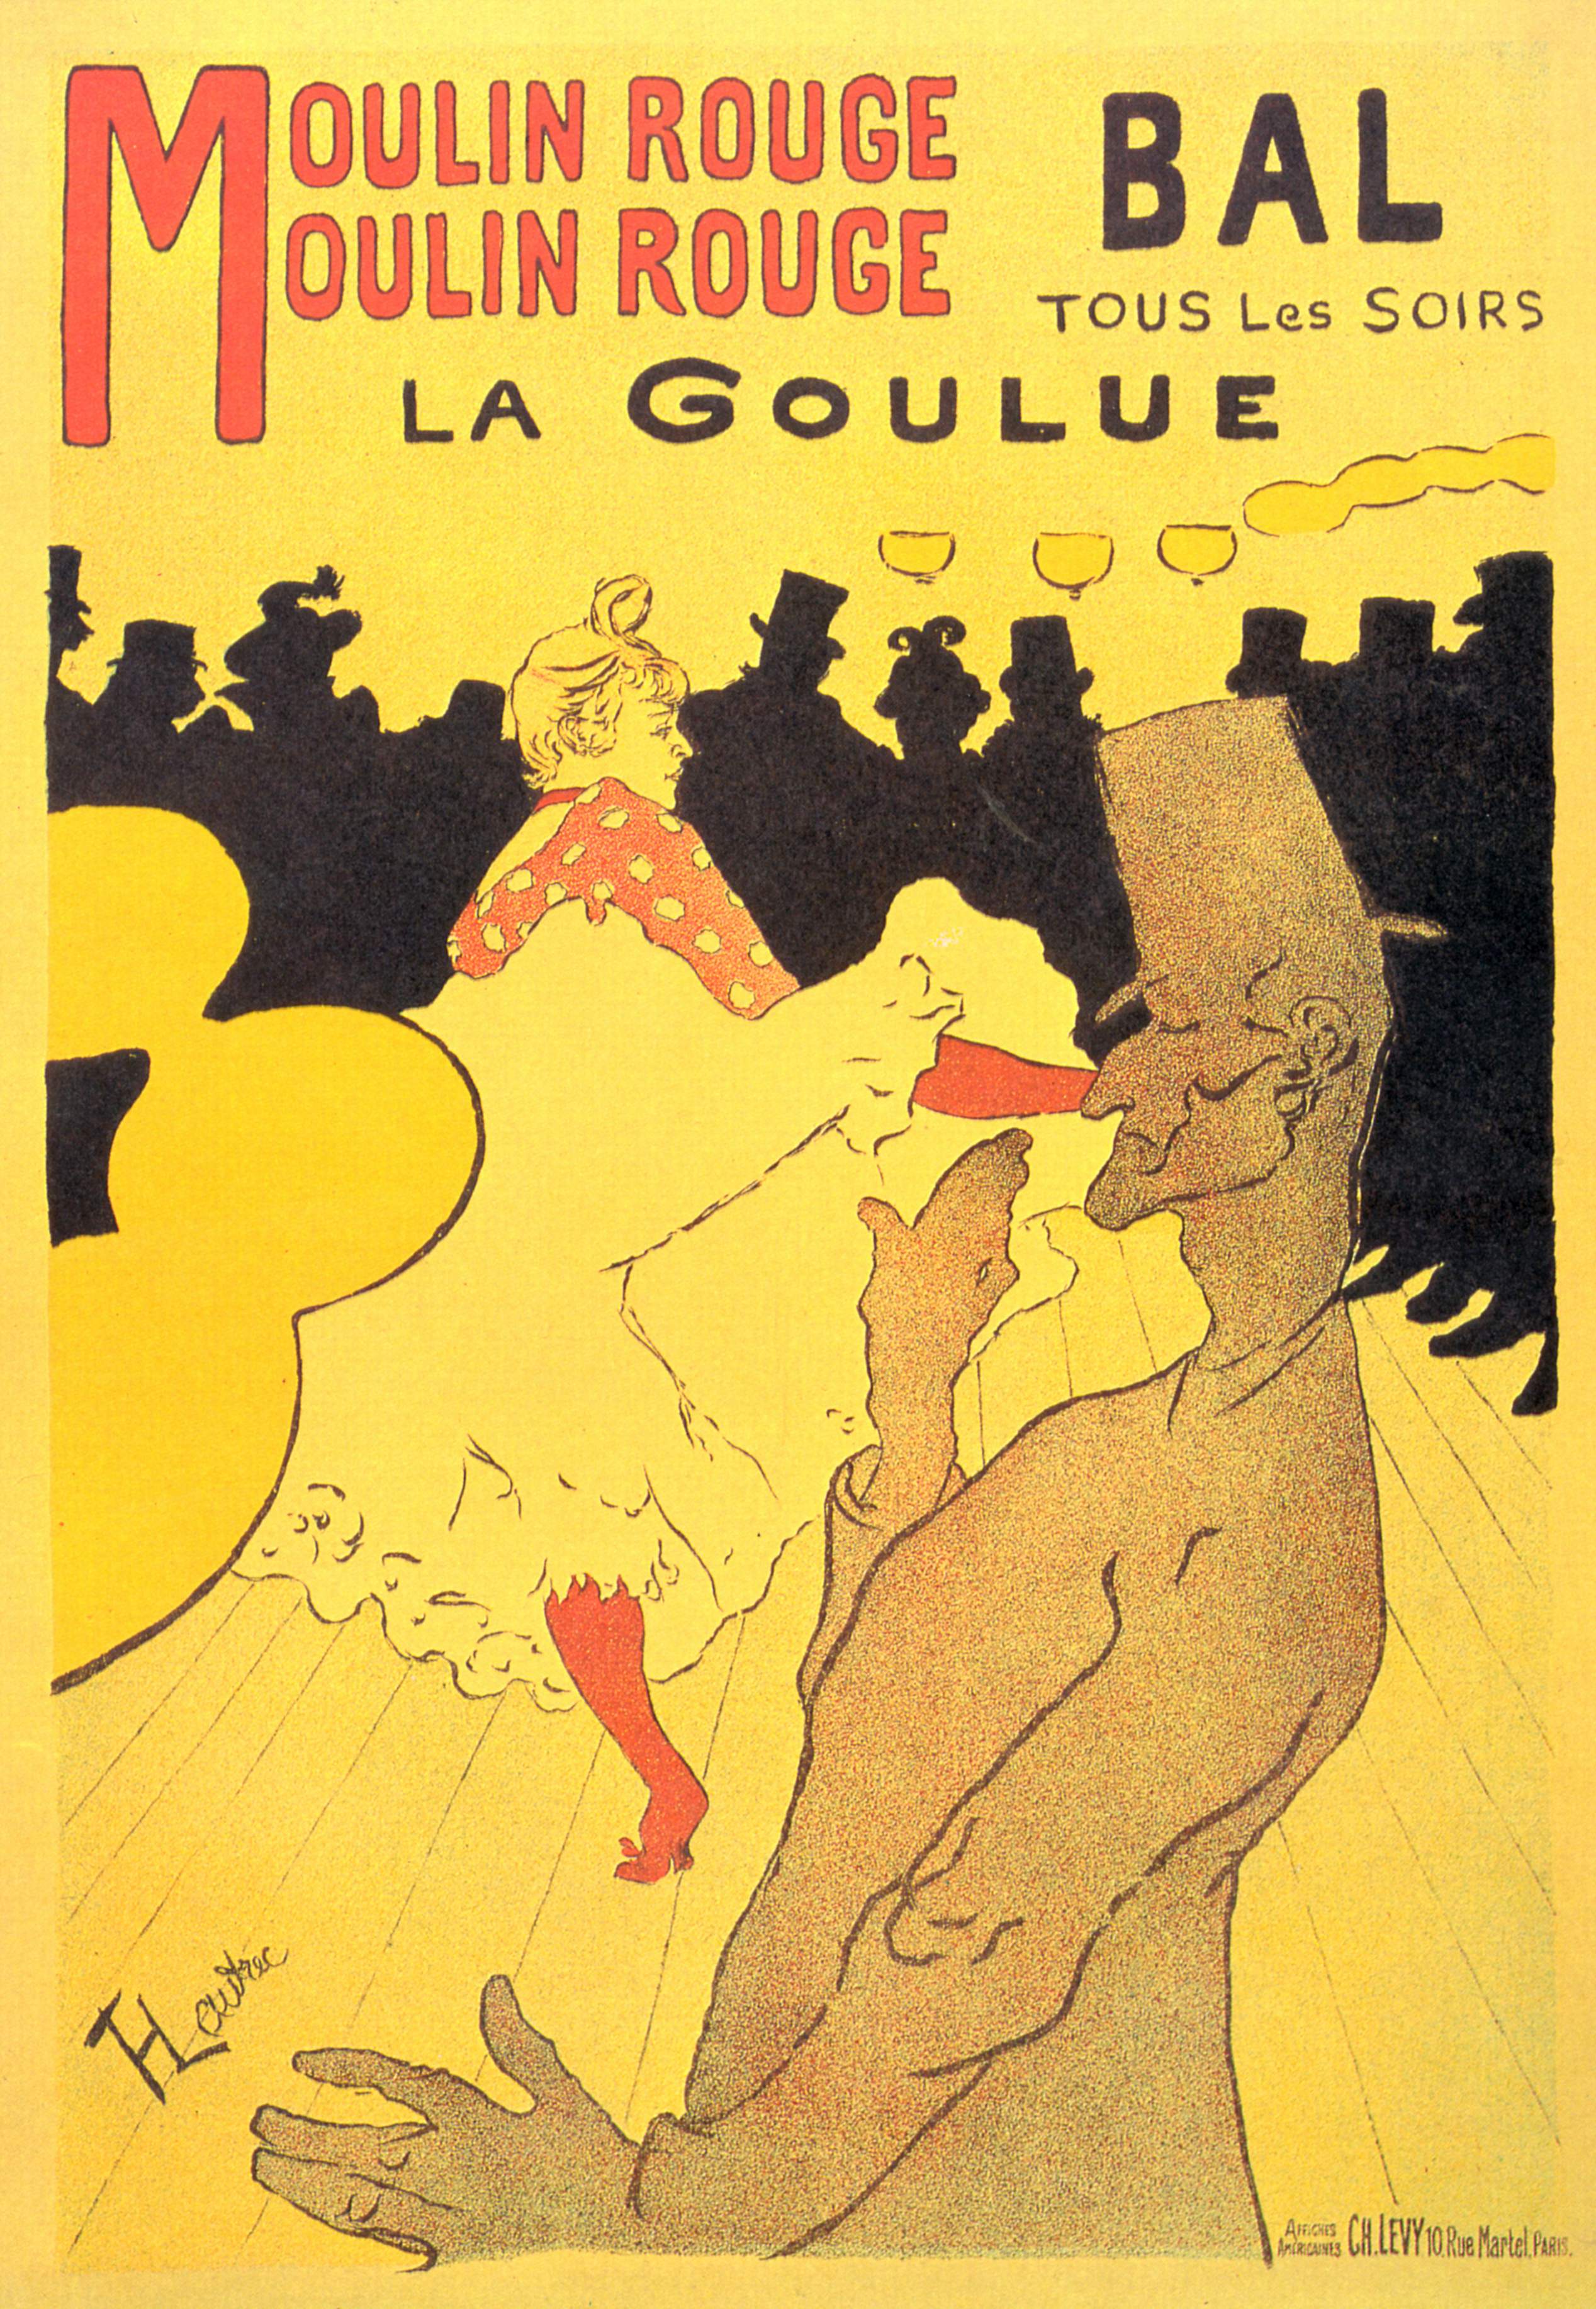 Moulin Rouge La Goulue